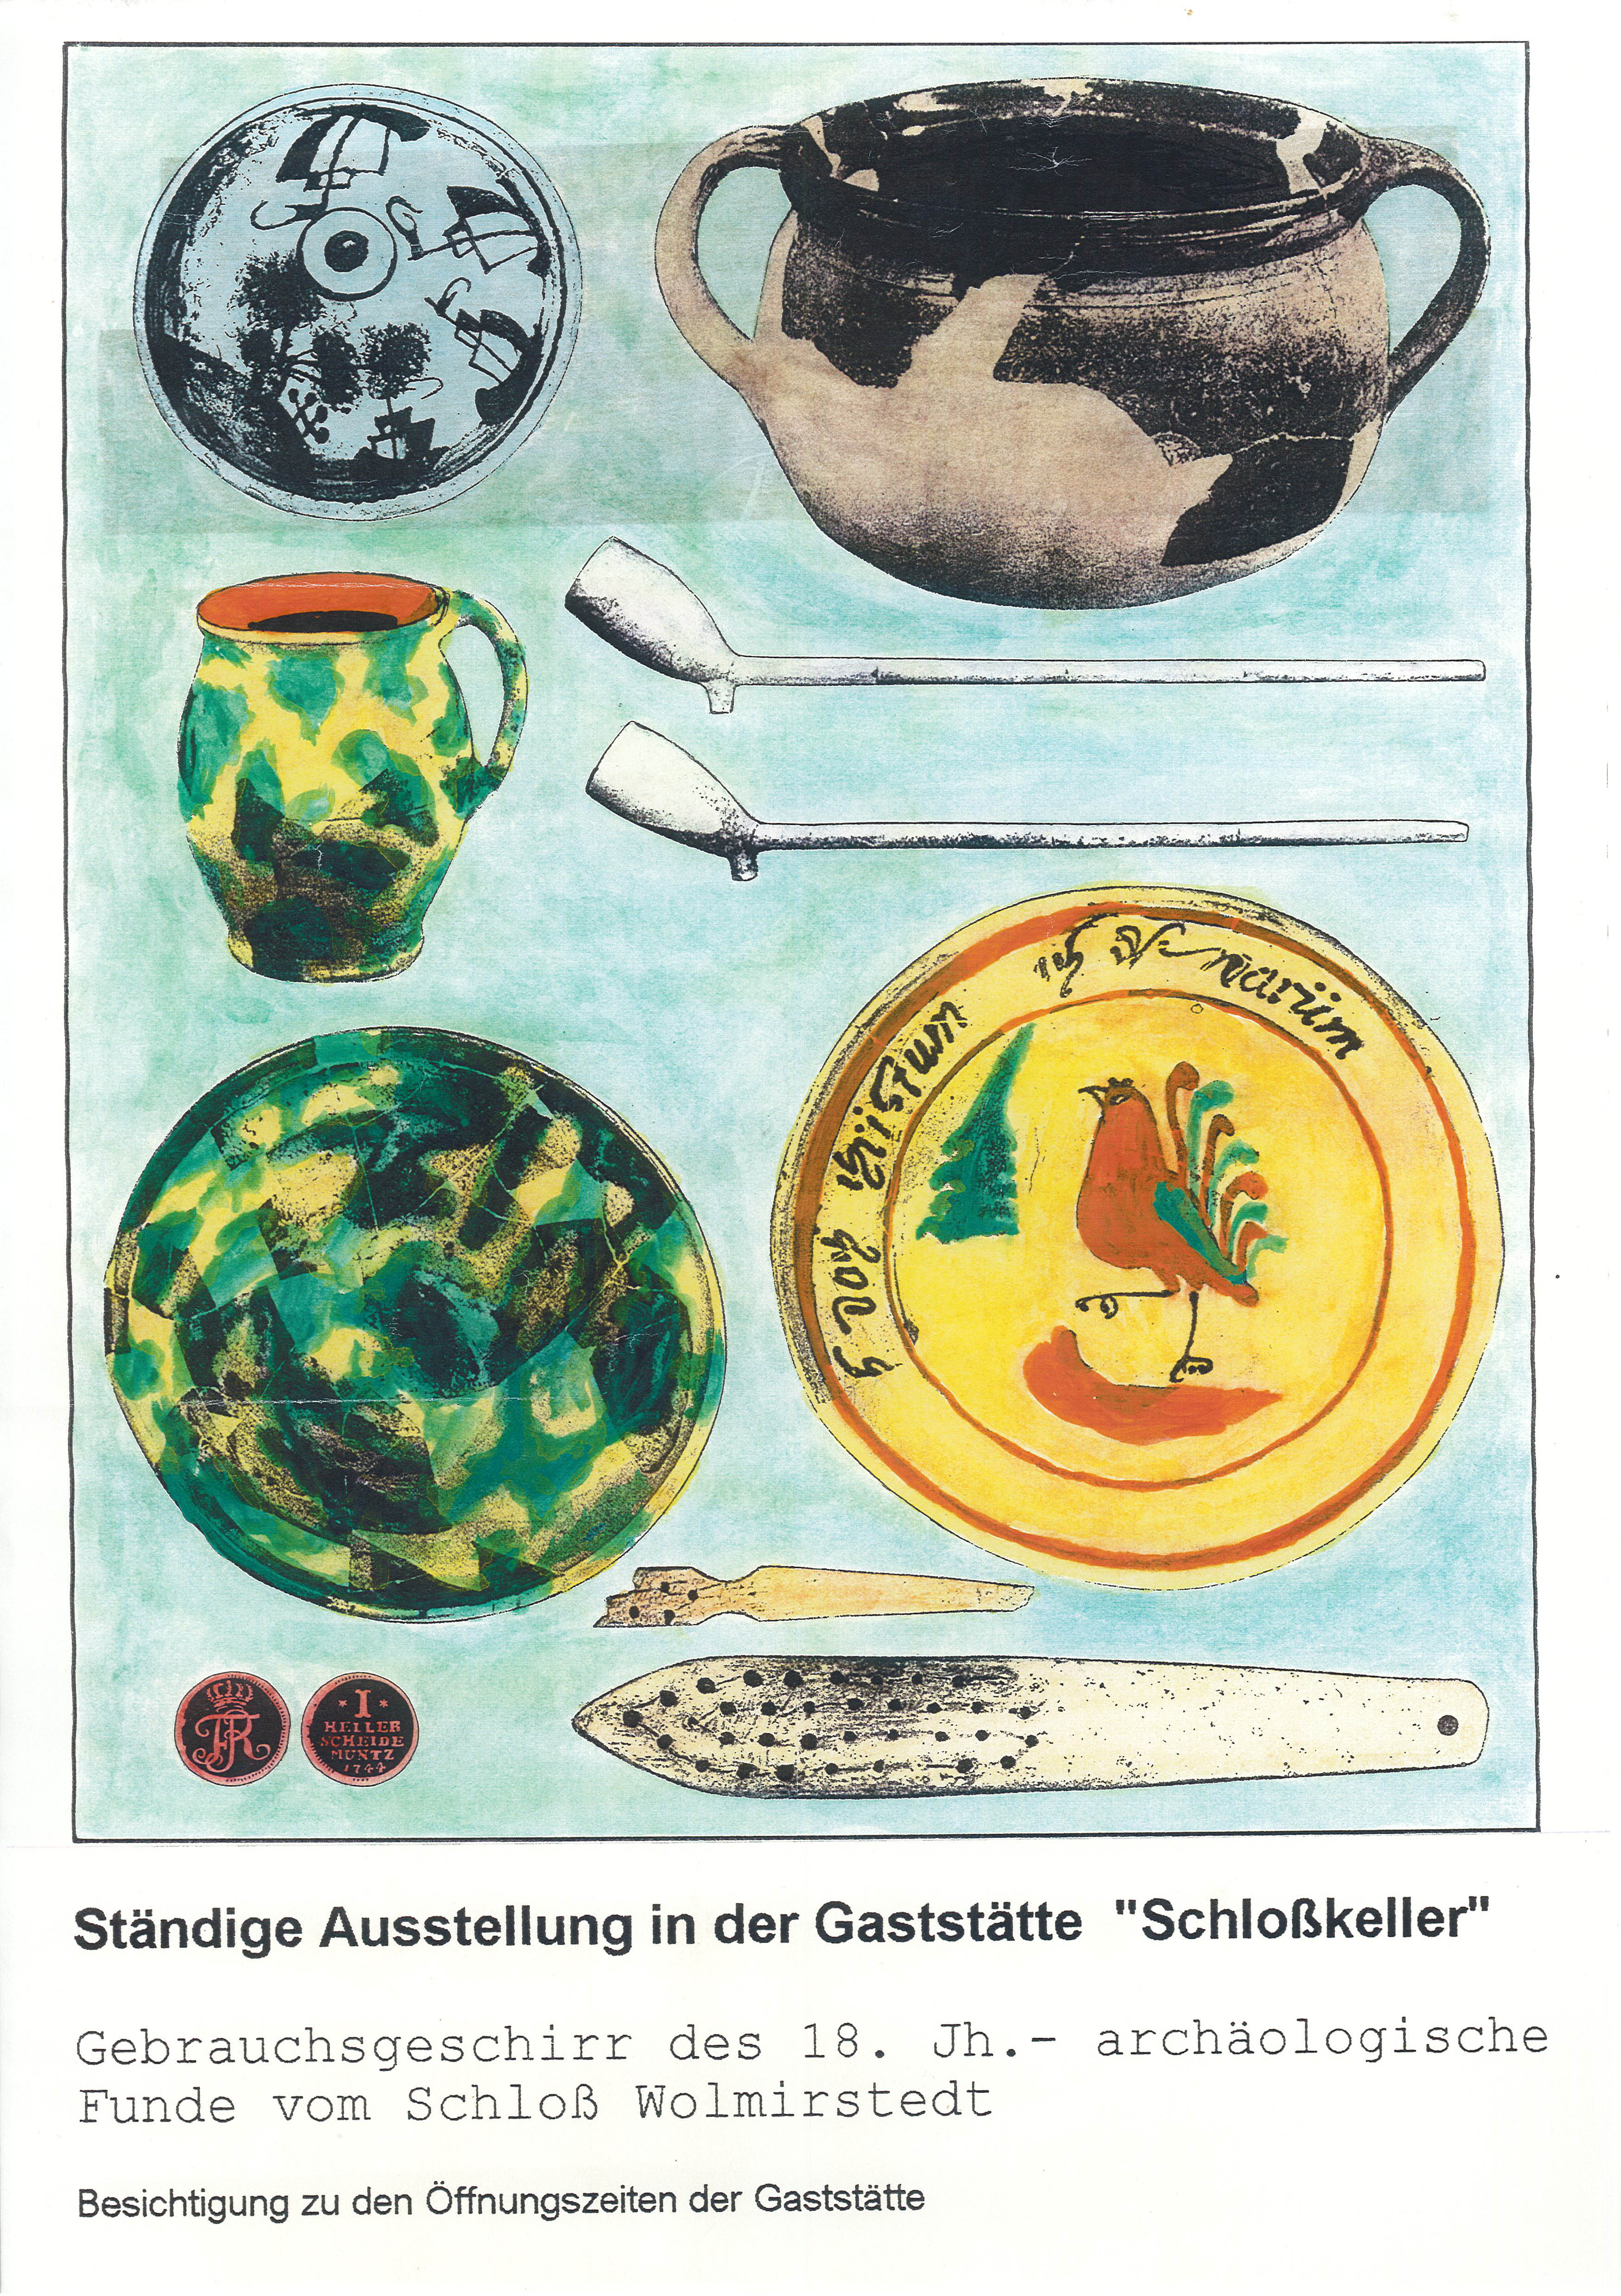 Ausstellungsplakat Dauerausstellung "Gebrauchsgeschirr des 18. Jh. - archäologische Funde vom Schloß Wolmirstedt" (Museum Wolmirstedt RR-F)